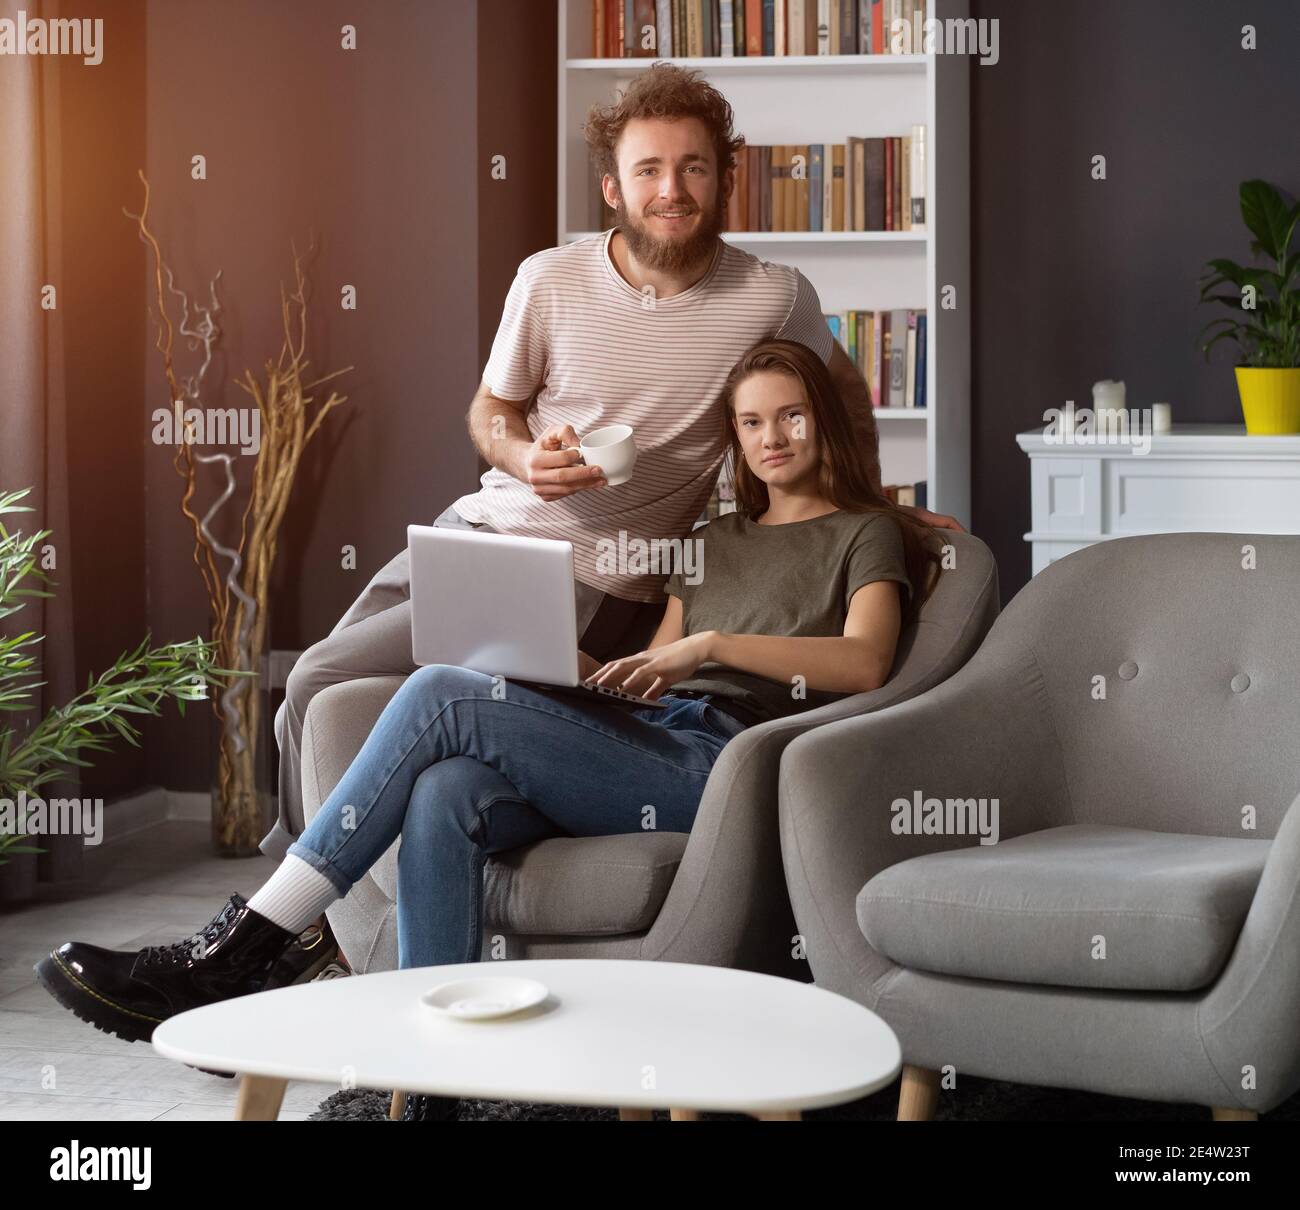 Travailler ensemble jeune couple restant en quarantaine à la maison avec assis sur les fauteuils. Un jeune couple heureux assis sur une chaise ensemble à l'aide d'un ordinateur portable Banque D'Images